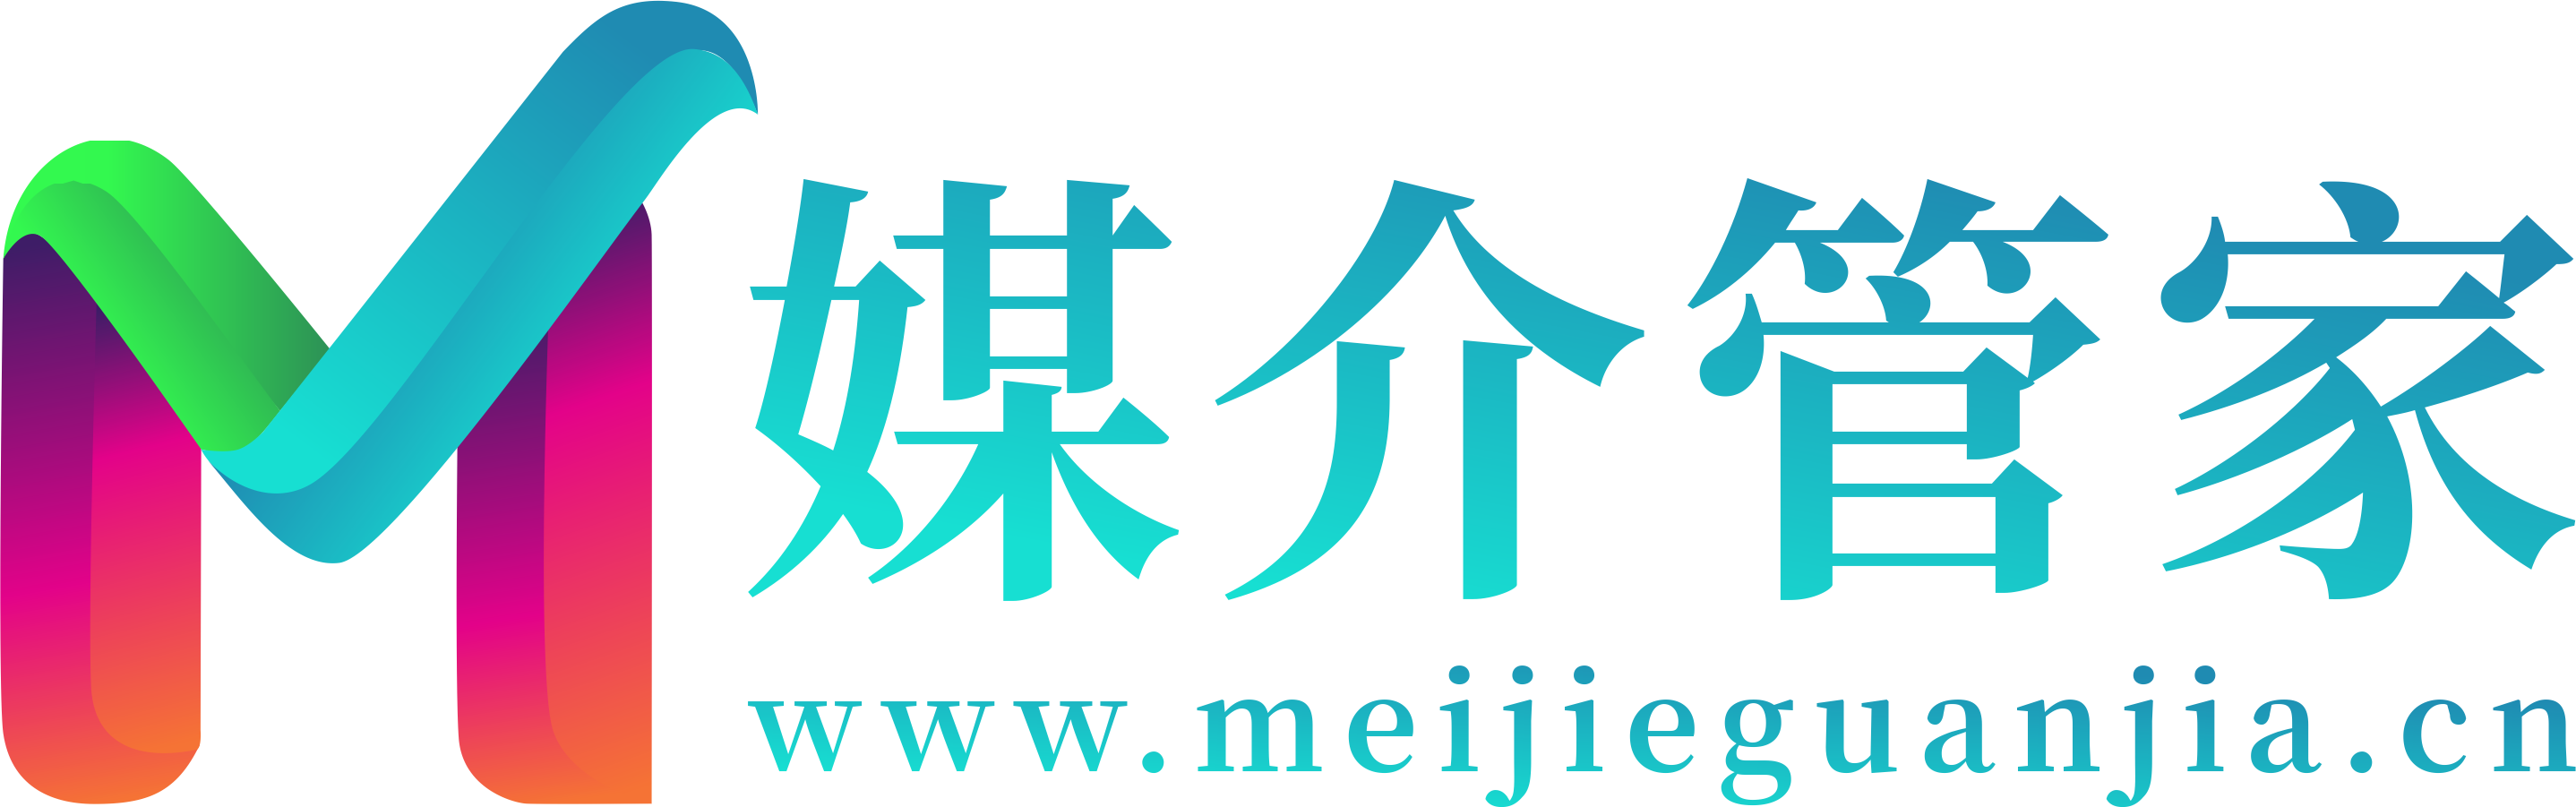 财通社logo